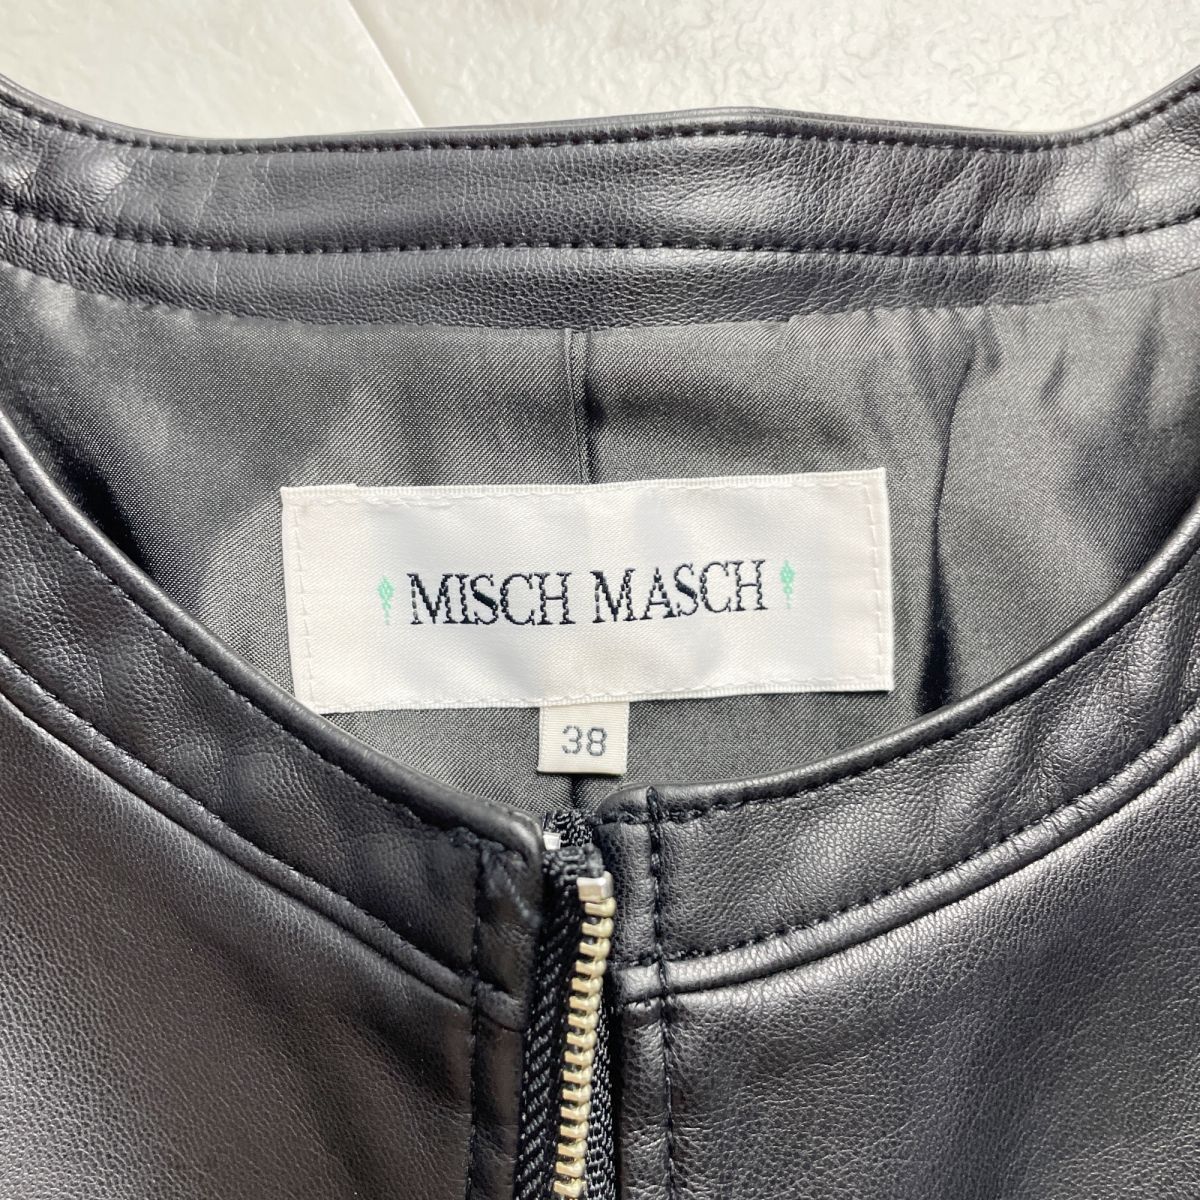 MISCH MASCH ... ... дизайн  фальшивый   кожа ... пиджак   вершина ...  женский   черный   черный   размер  38*PC870